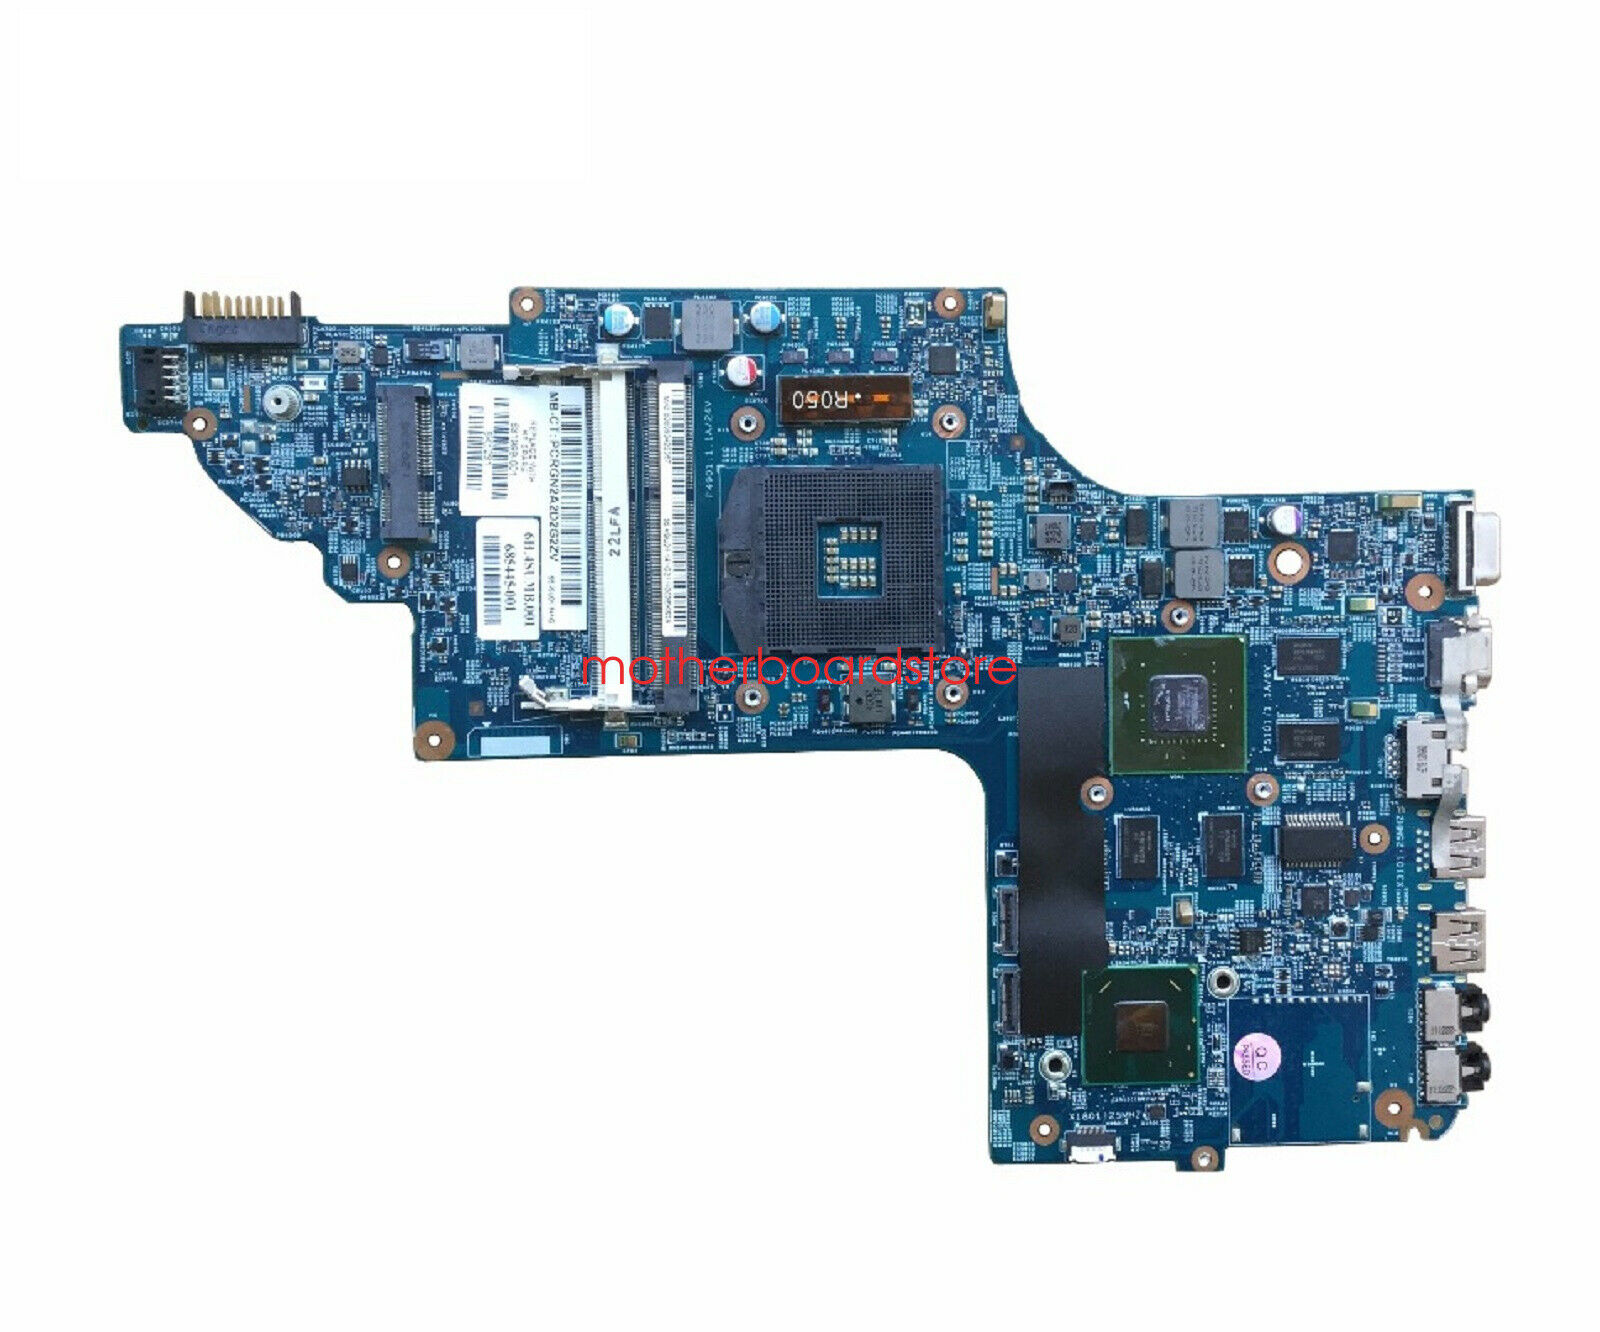 681999-001 - HP Pavilion dv7-7000 (dv7-7050sb) Intel (socket 989) motherboard Compatible Brand: For HP Comp